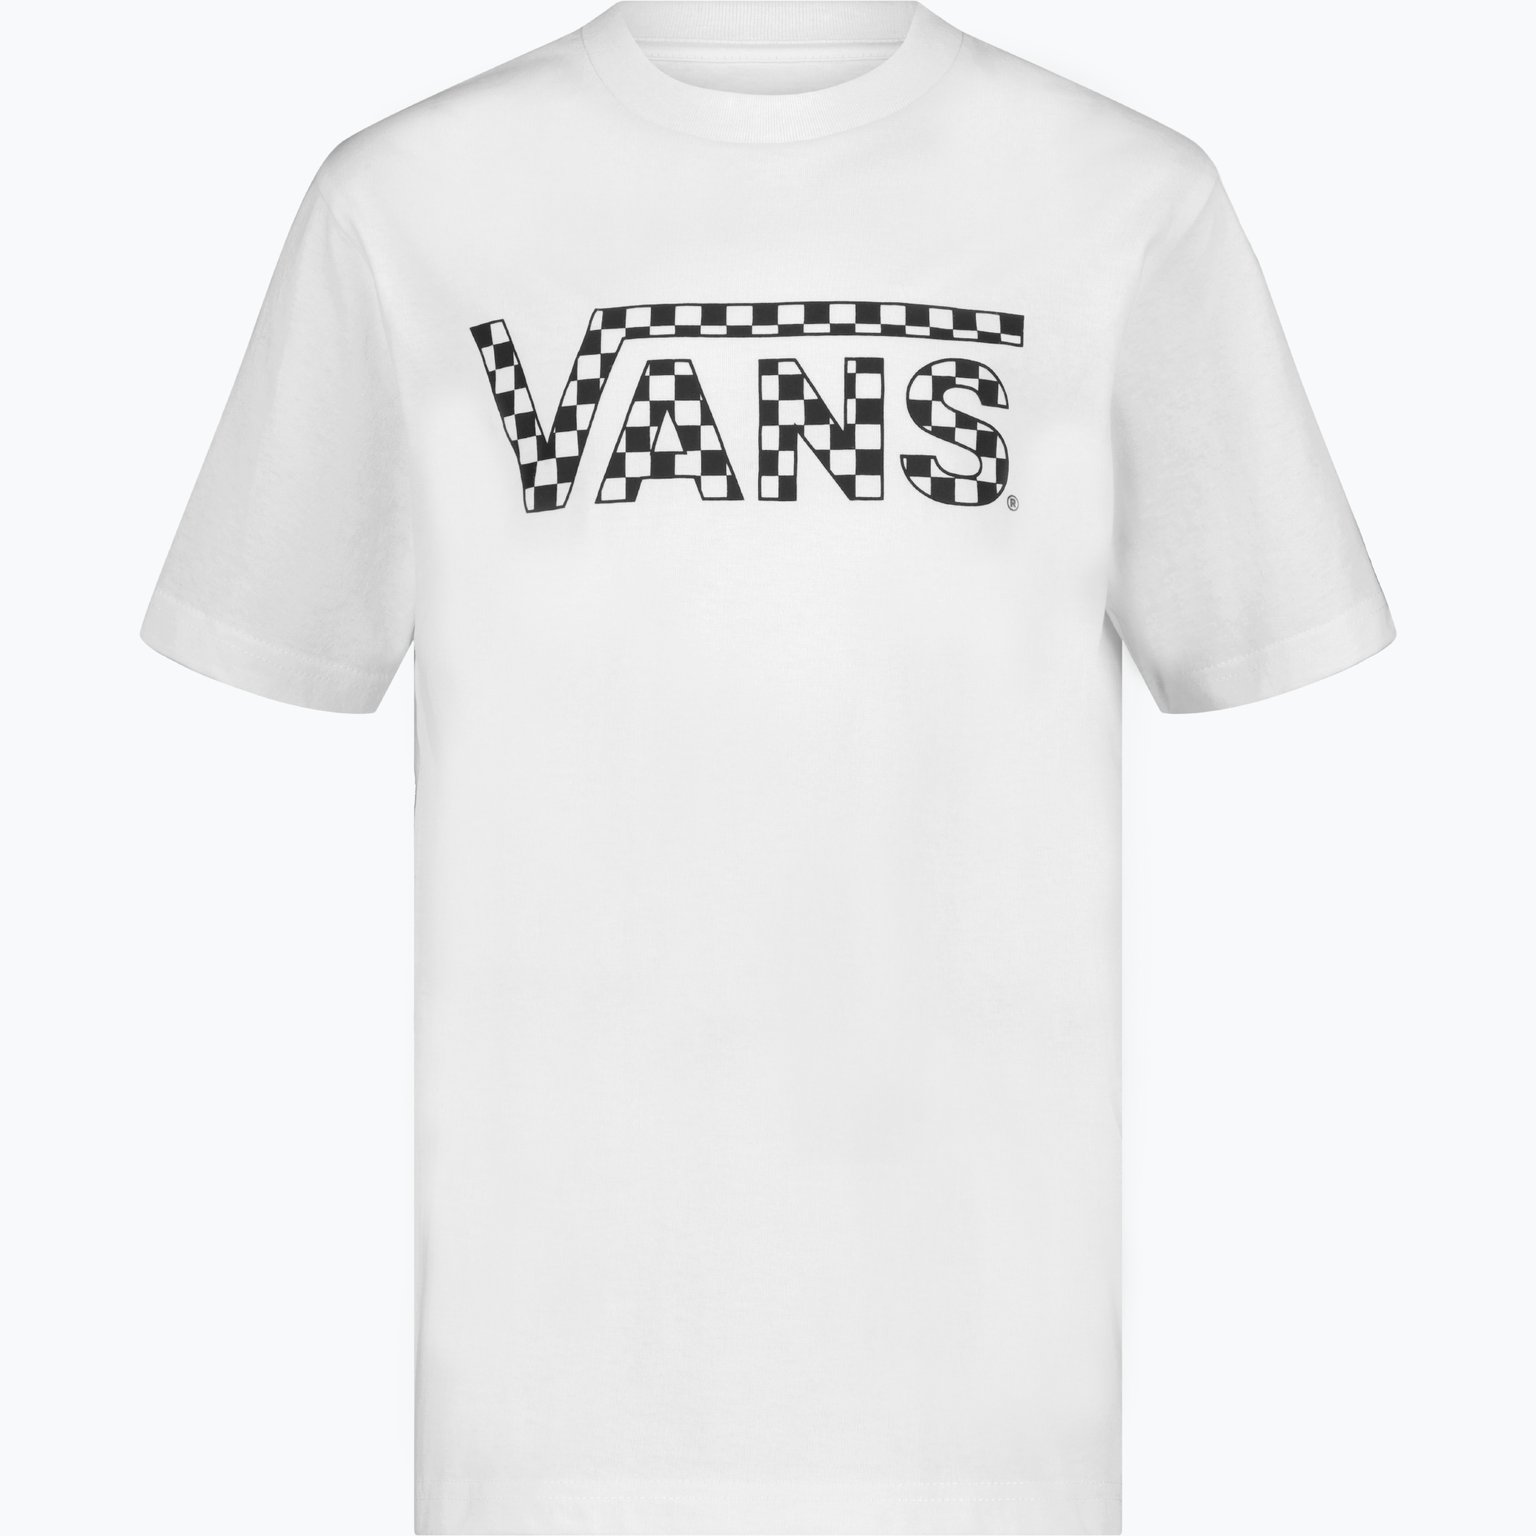 Checkered Vans JR t-shirt